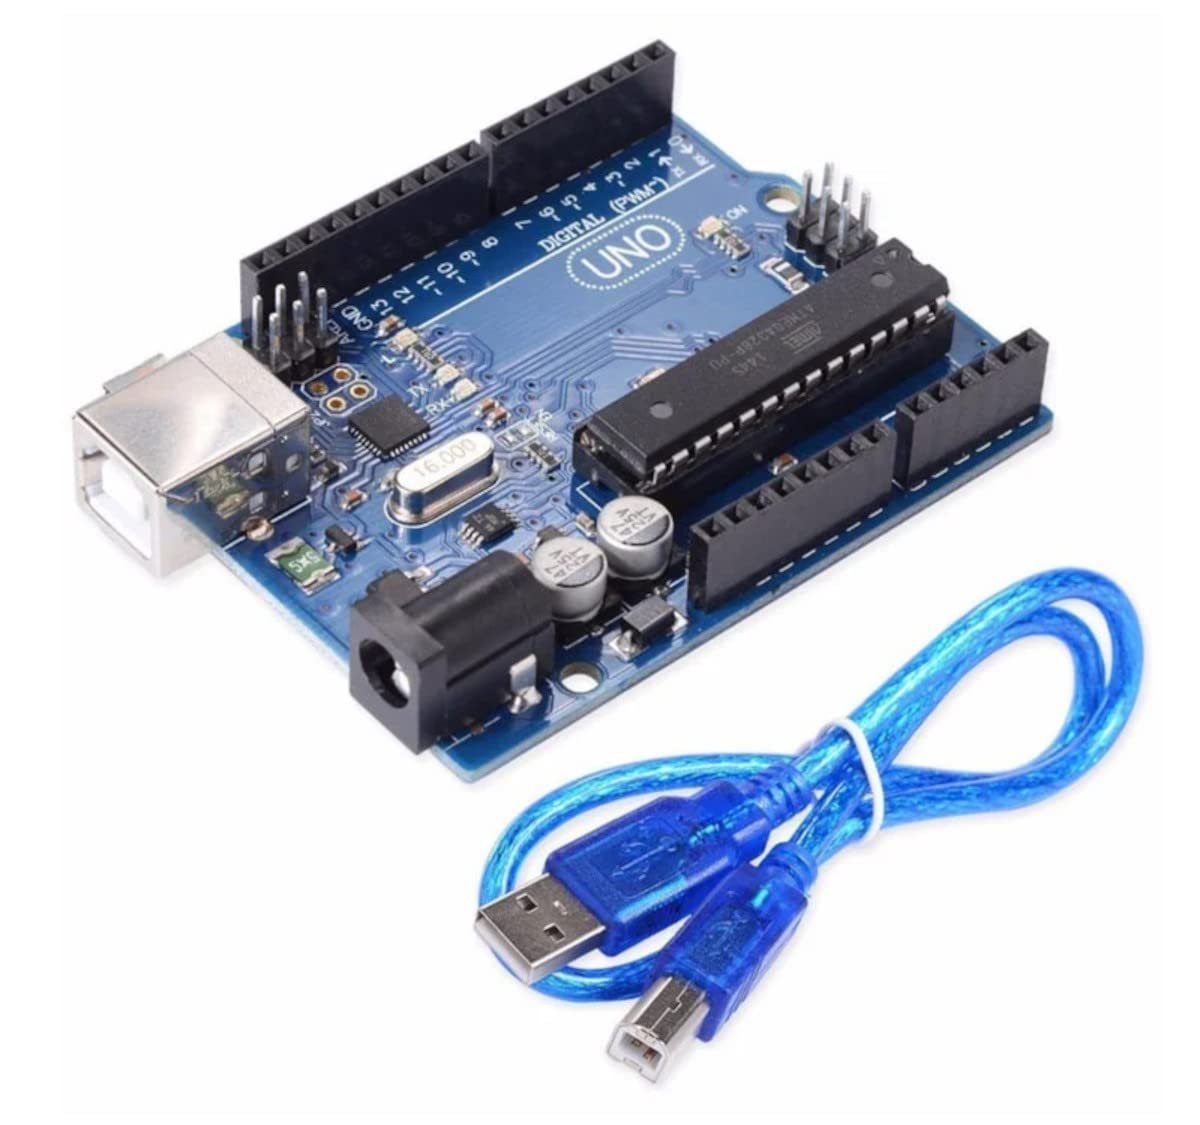 Tishvi UNO R3 DIP ATMEGA328P ATMEGA16U2 Compatible with Arduino UNO R3 Development Board With USB Cable